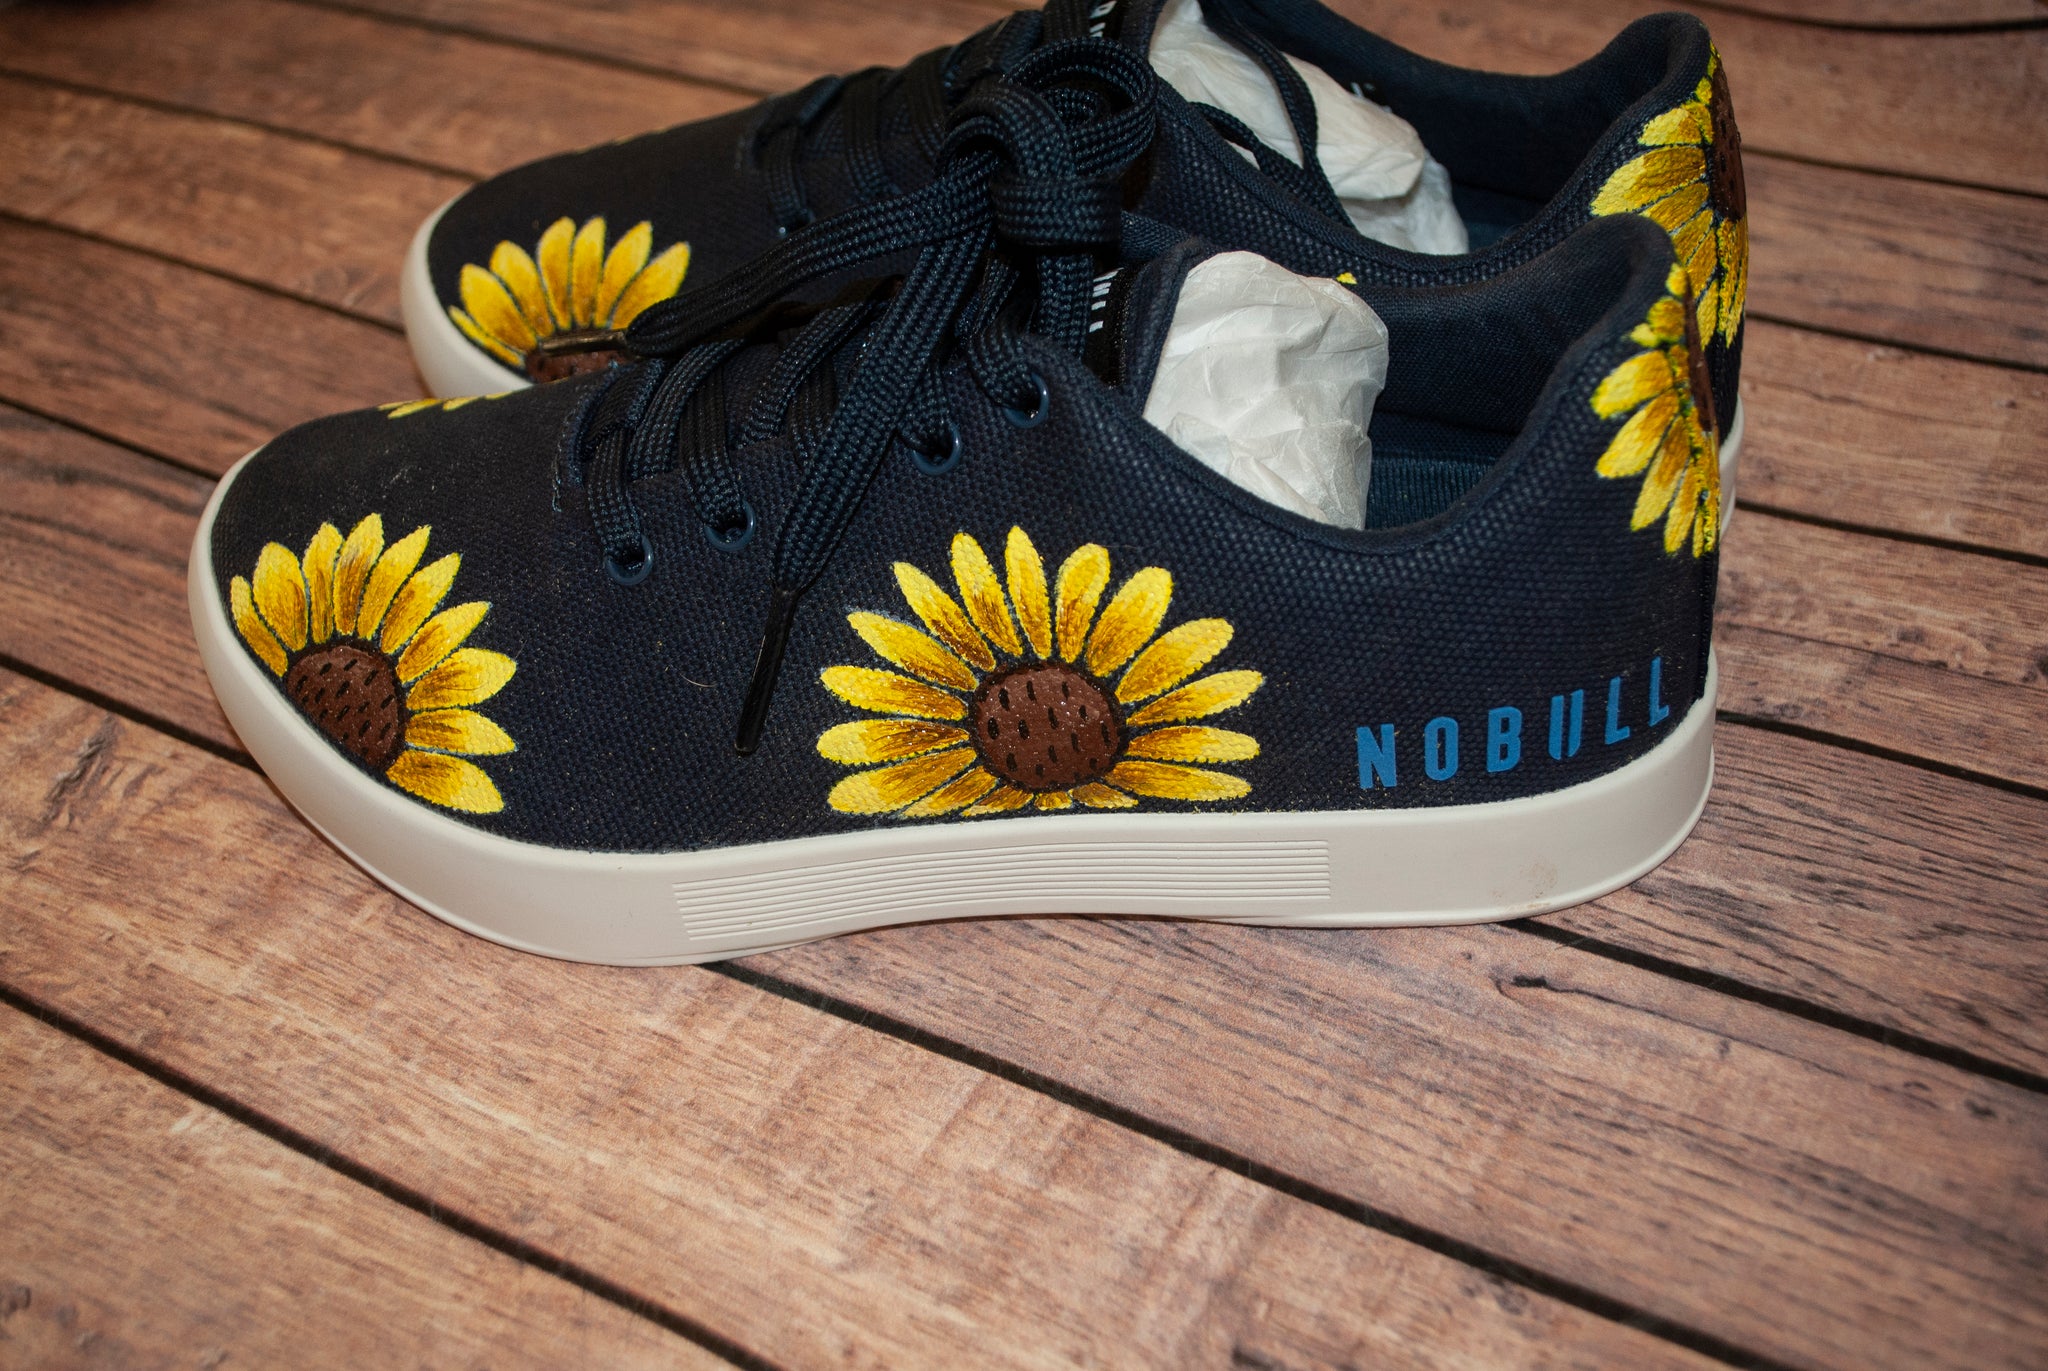 Sunflower NoBulls